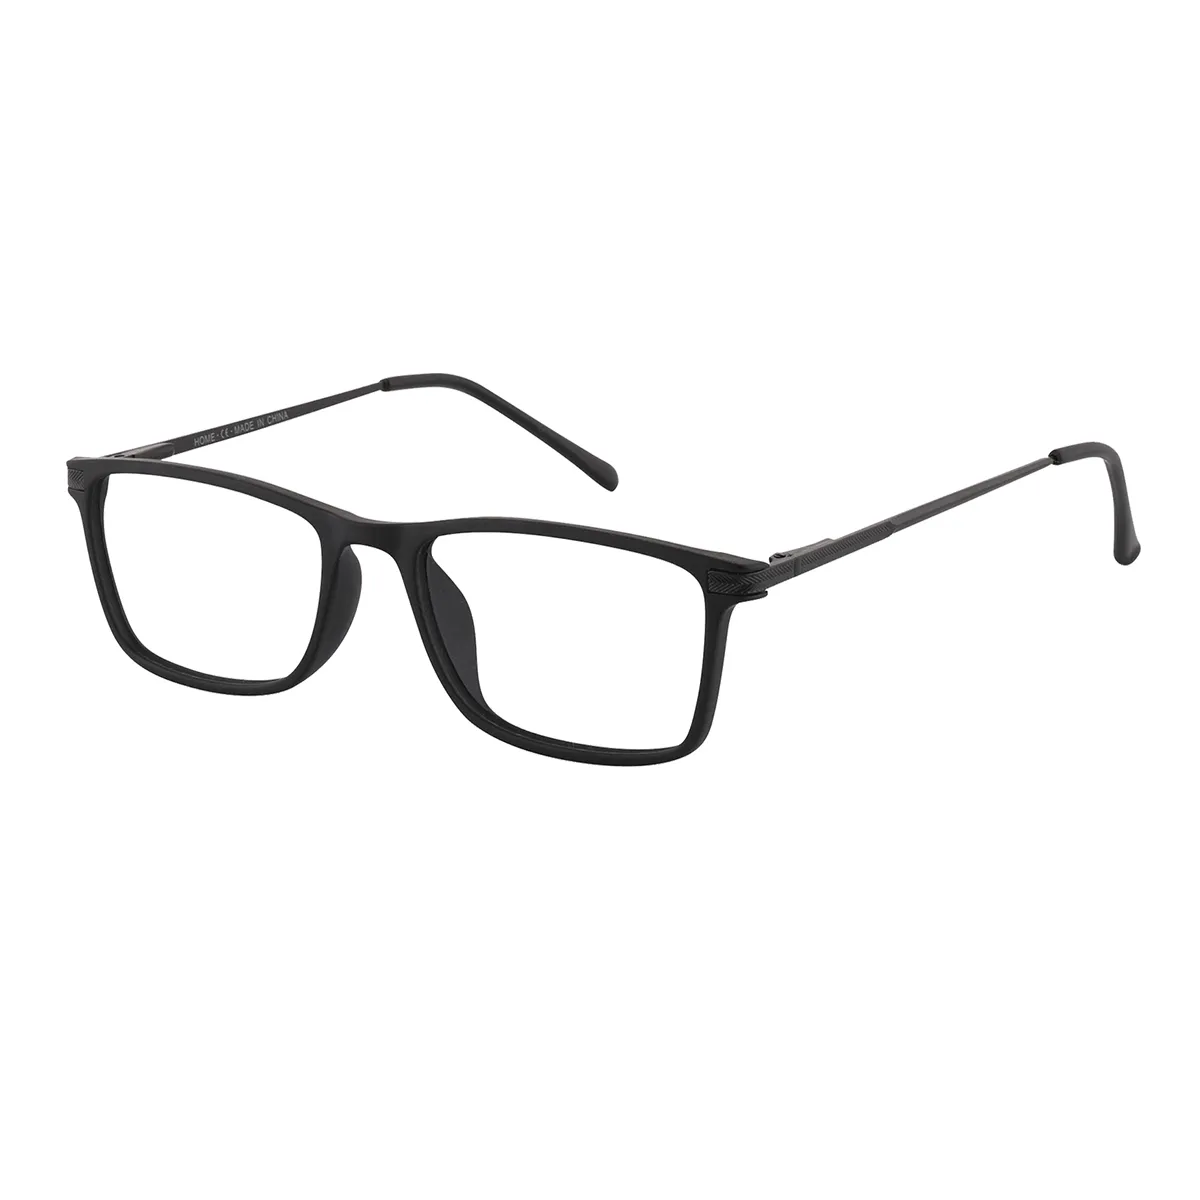 Alicia - Rectangle Black Glasses for Men & Women